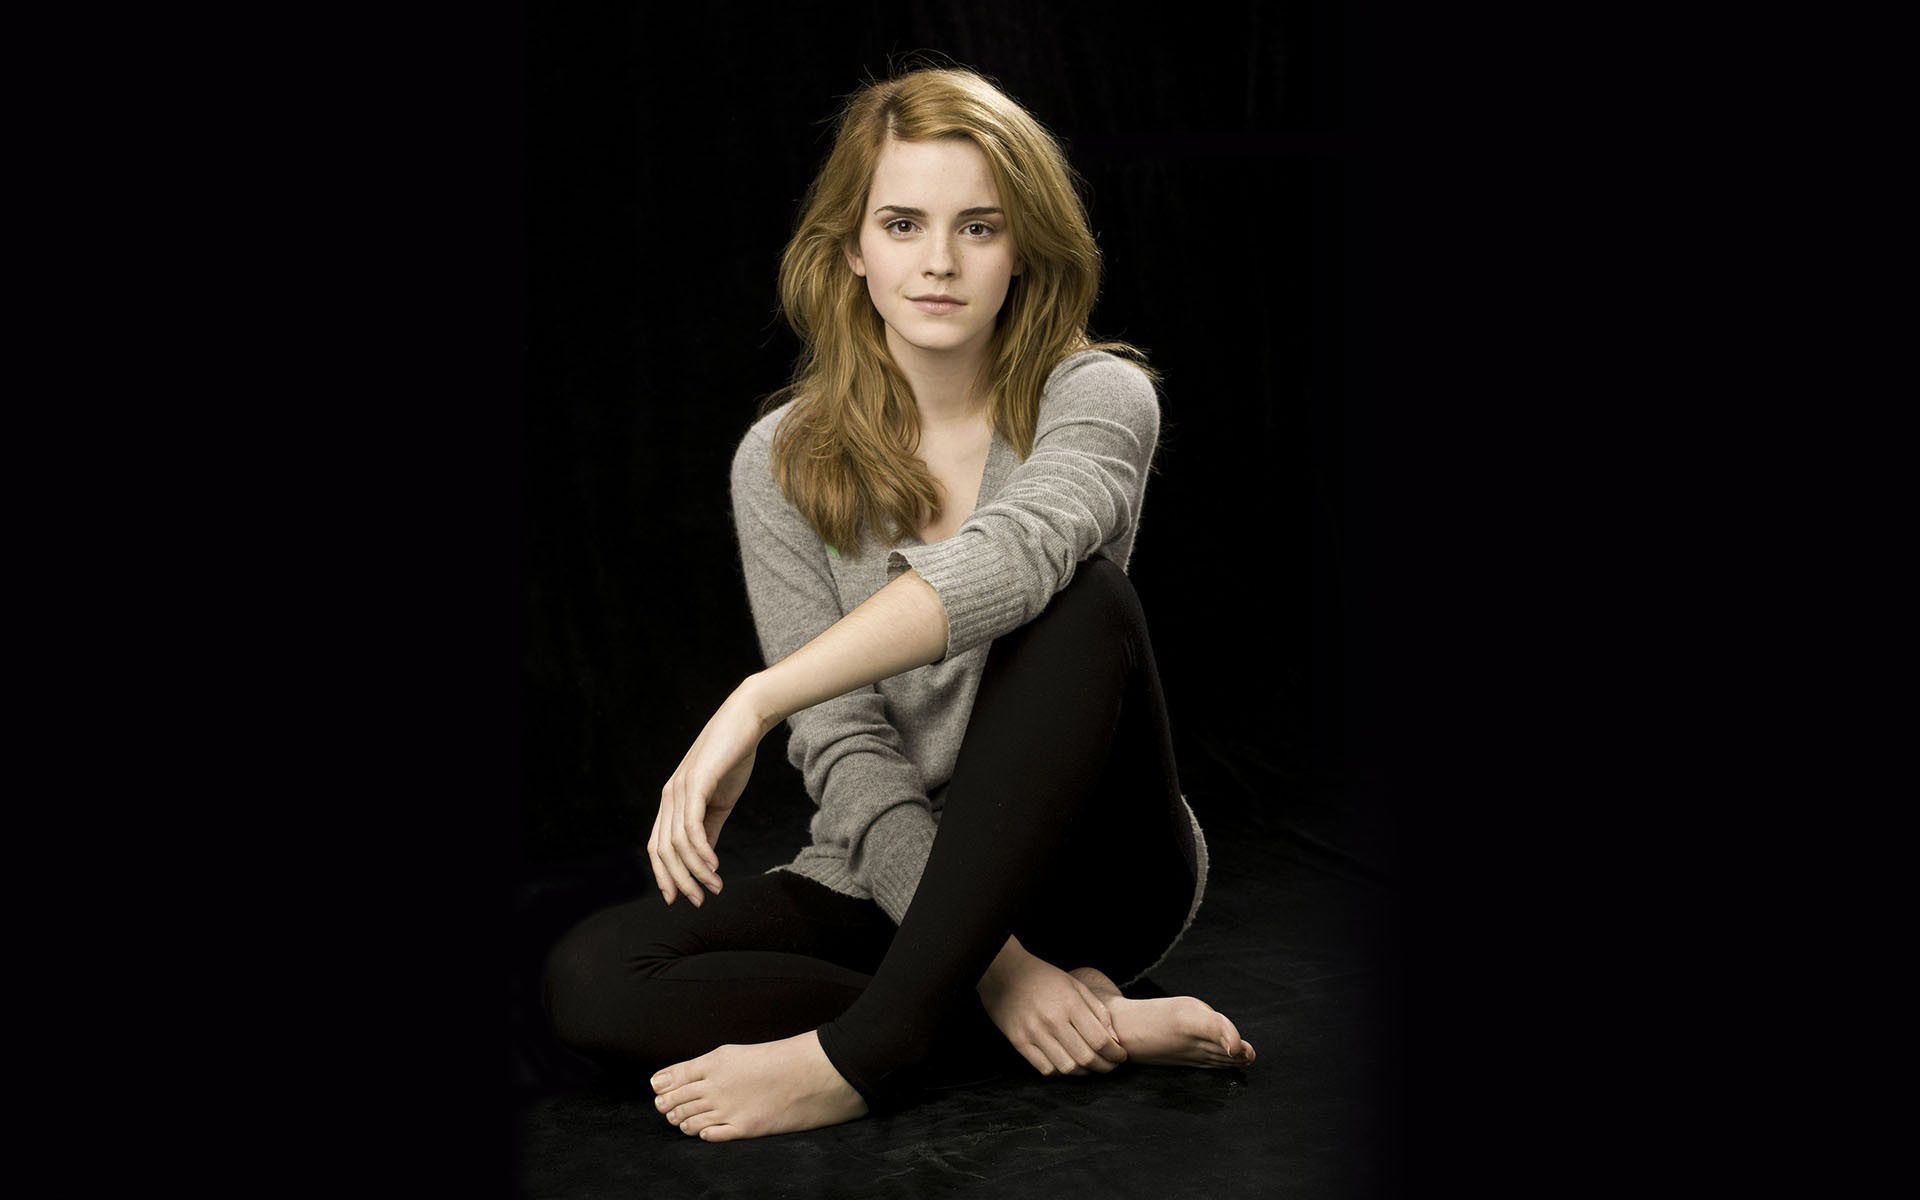 Fondos De Pantalla De Emma Watson FondosMil